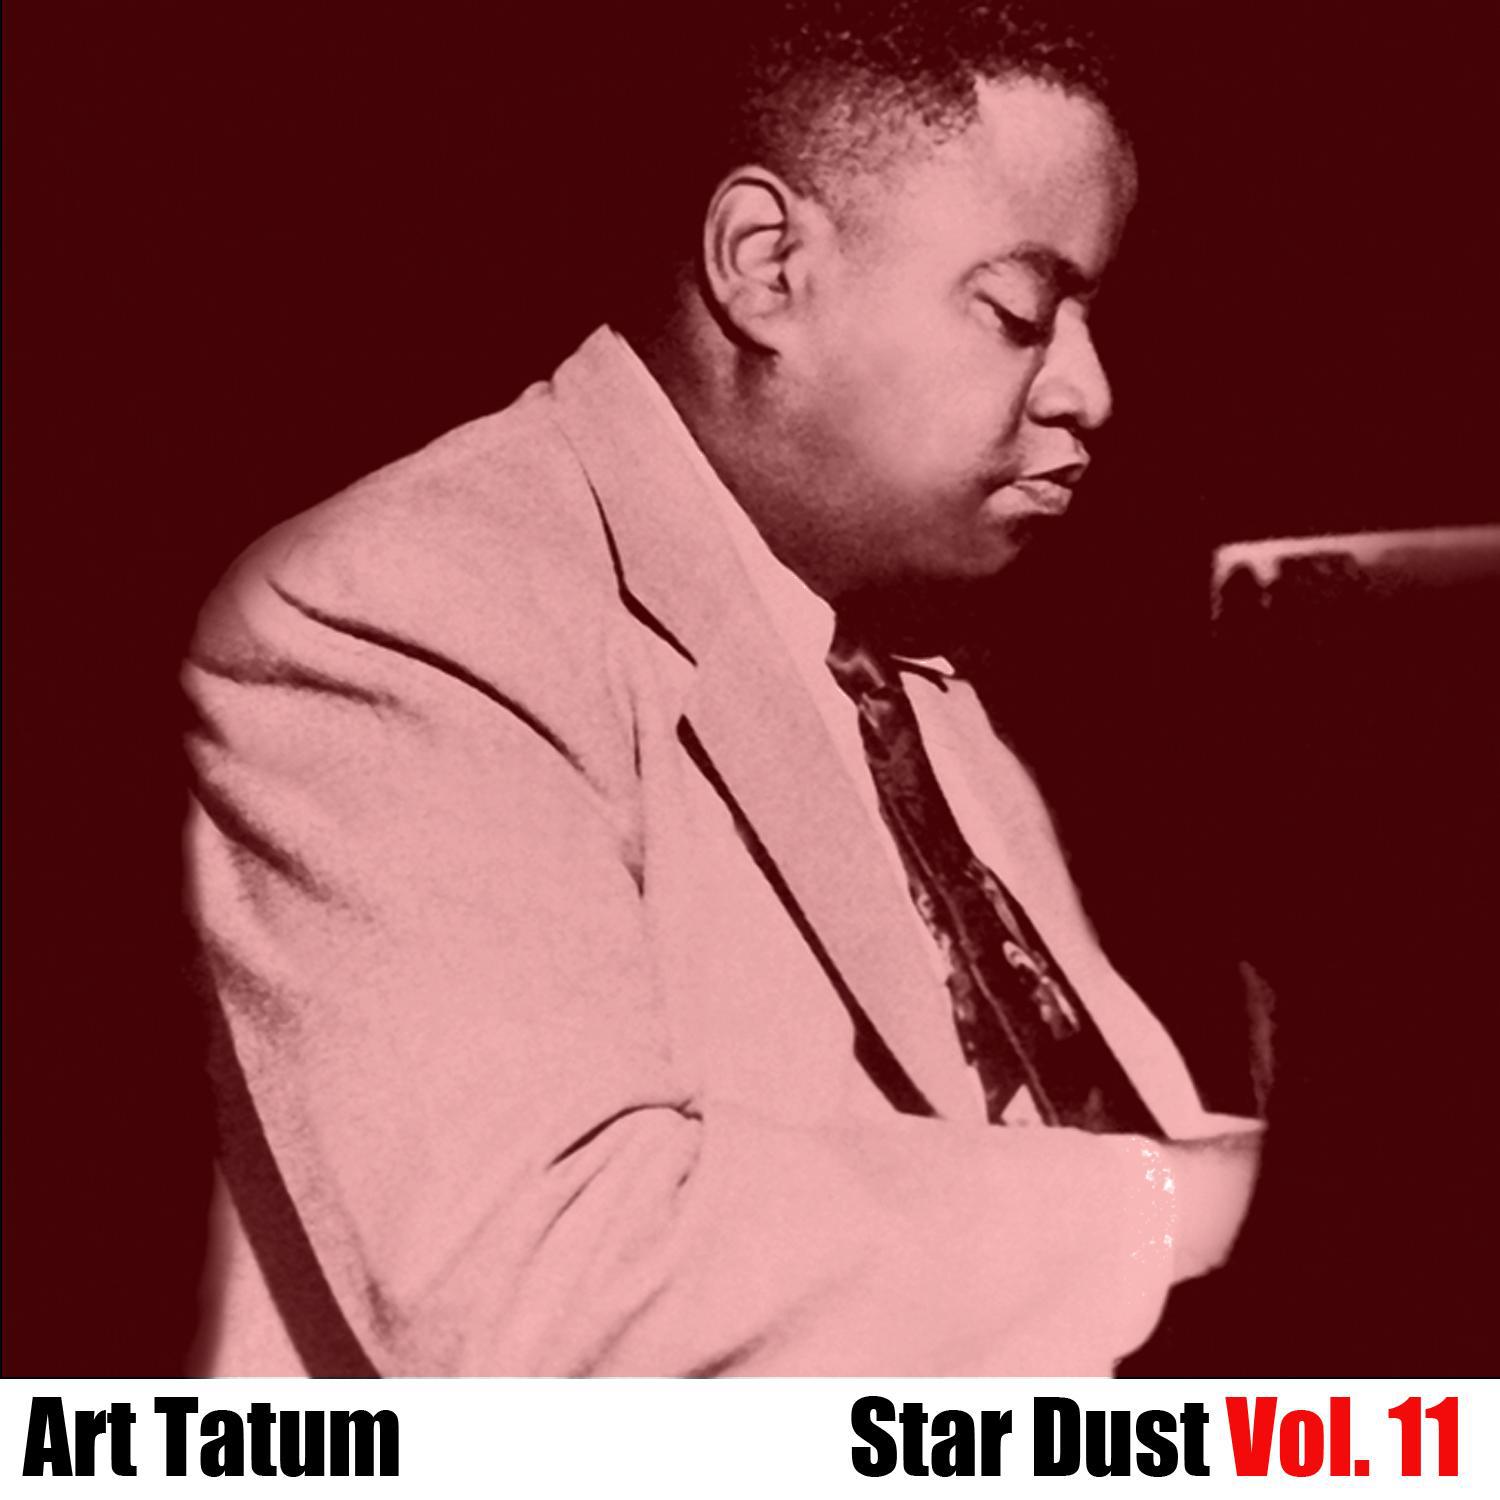 Star Dust, Vol. 11